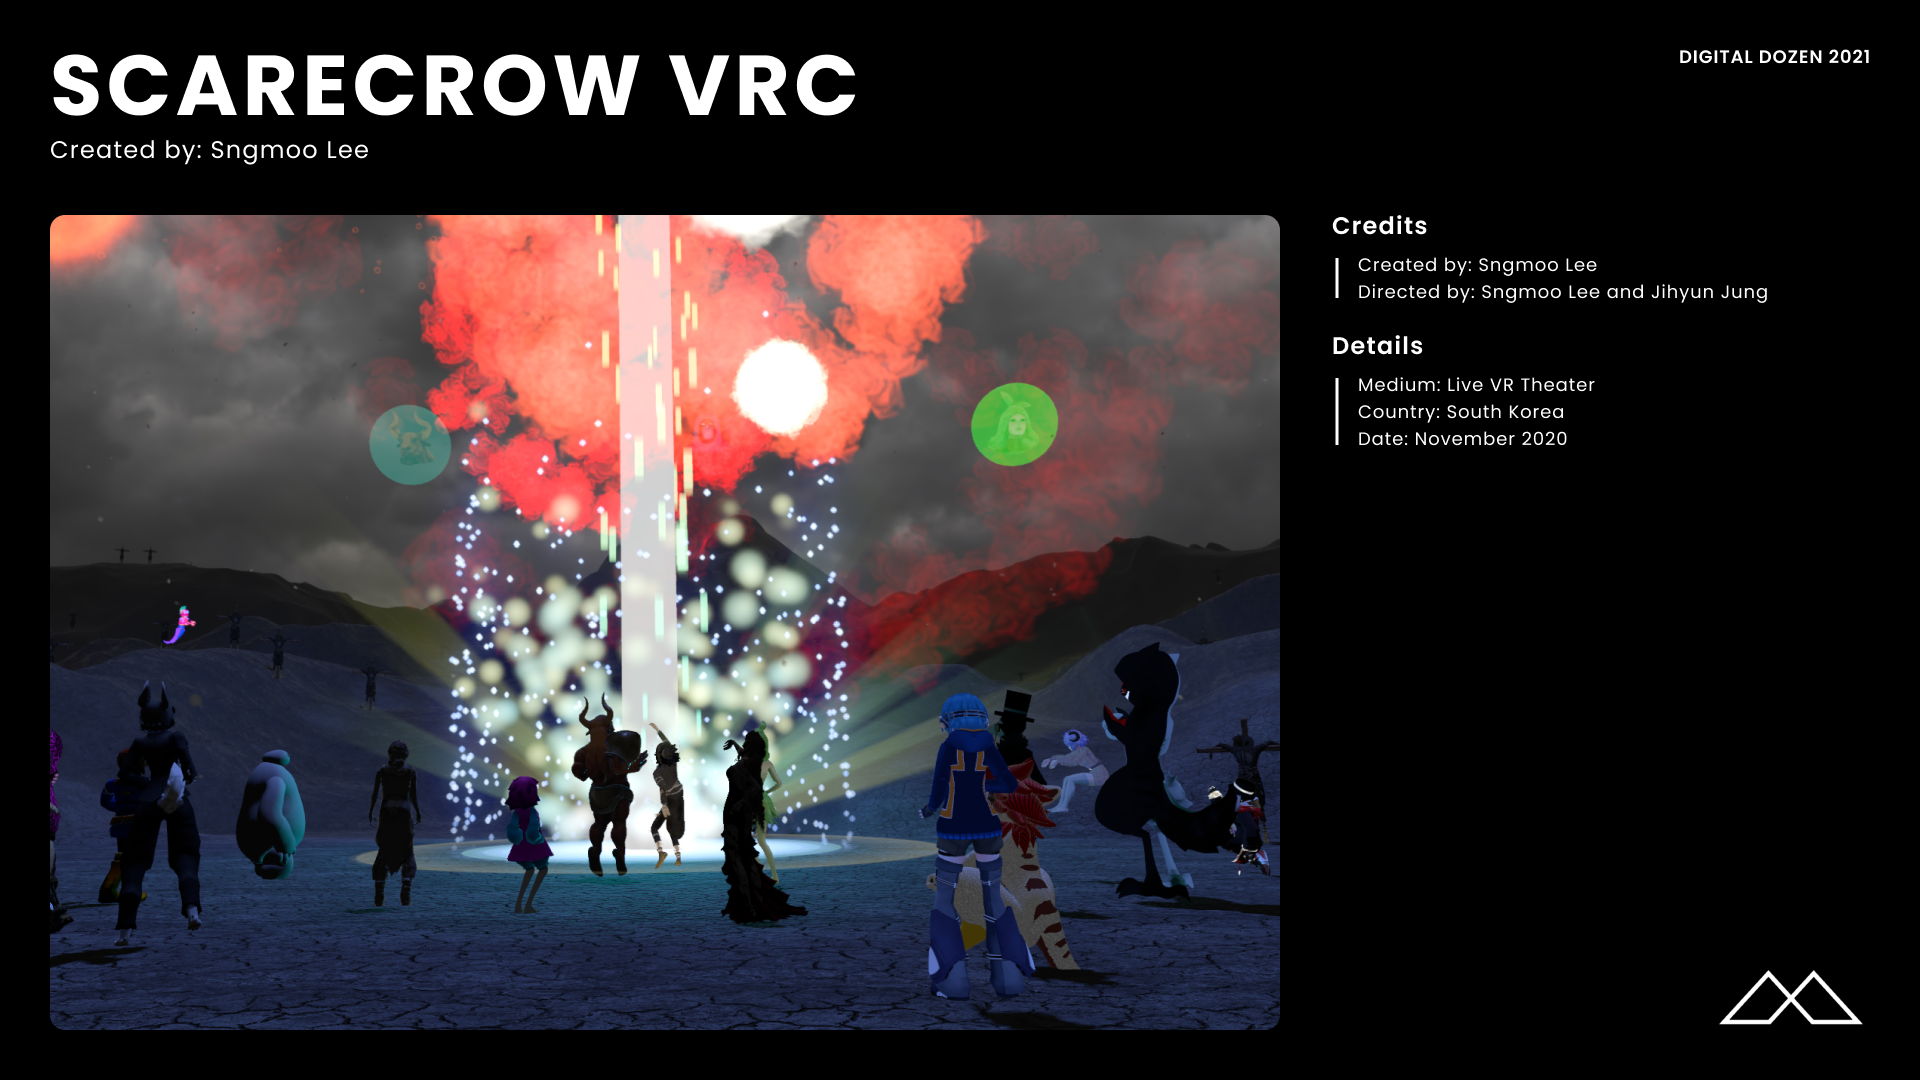 Scarecrow VRC Credits